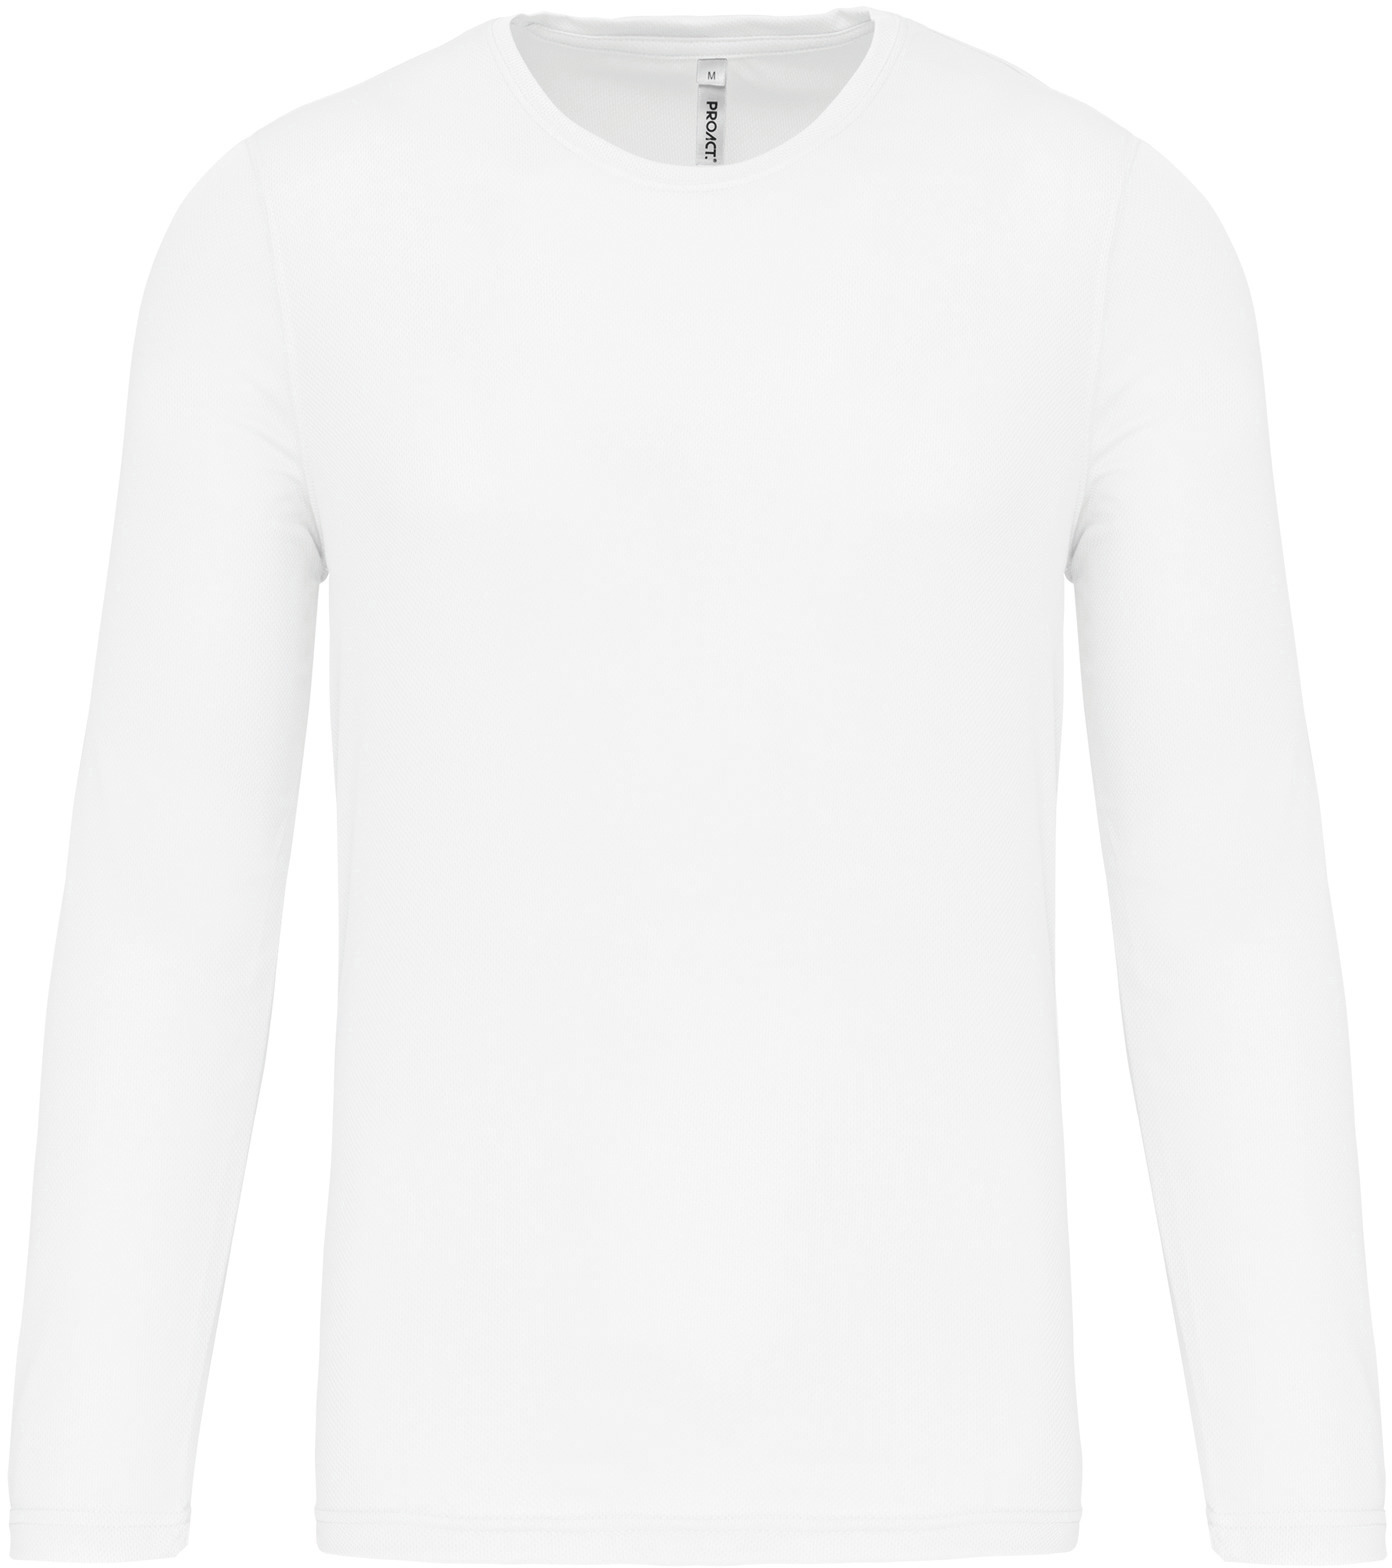 Pánské sportovní tričko dlouhý rukáv PA443 Barva: bílá, Velikost: L